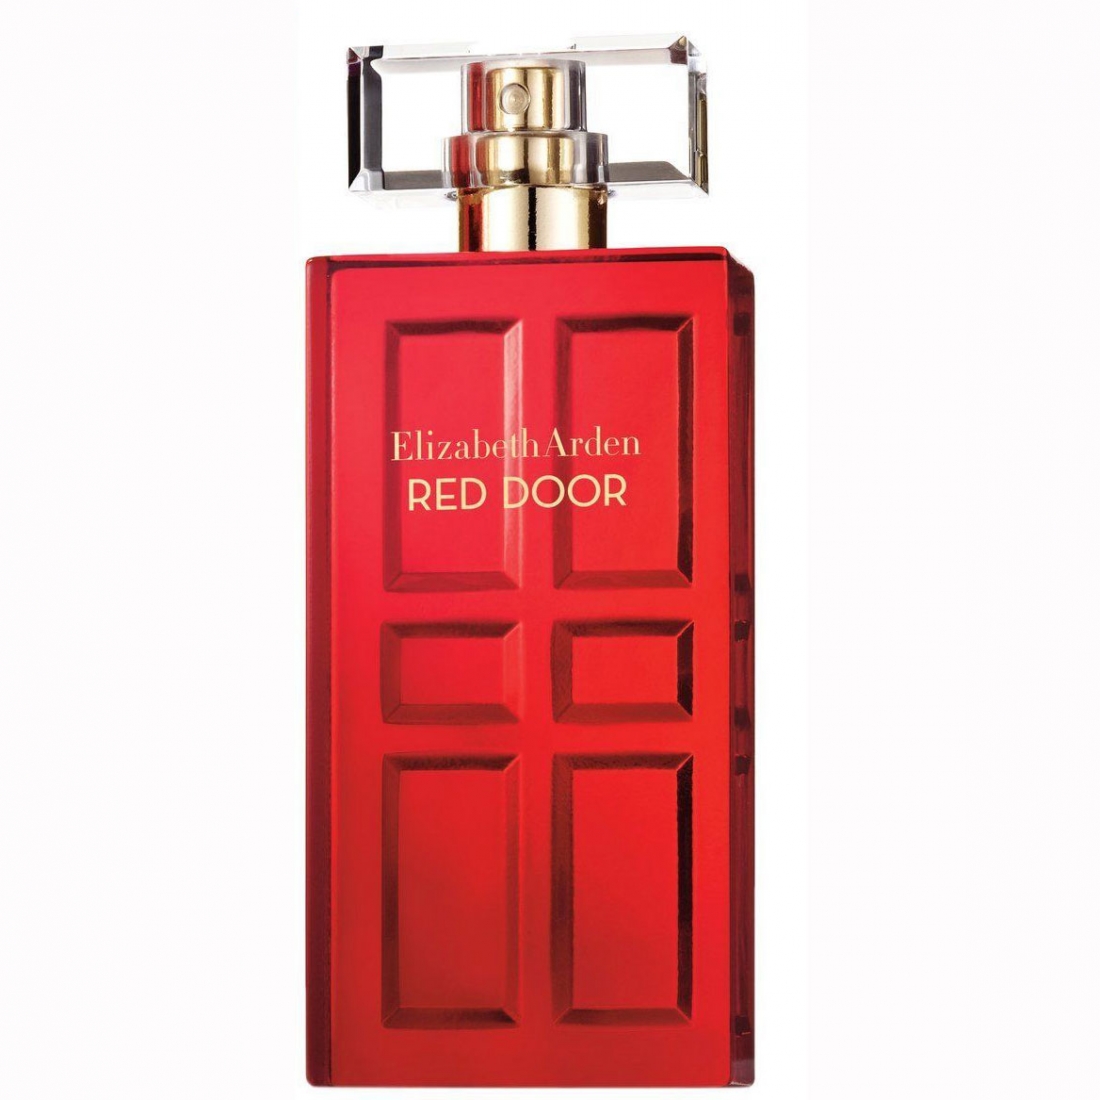 Eau de Toilette spray 'Red Door' - 30 ml